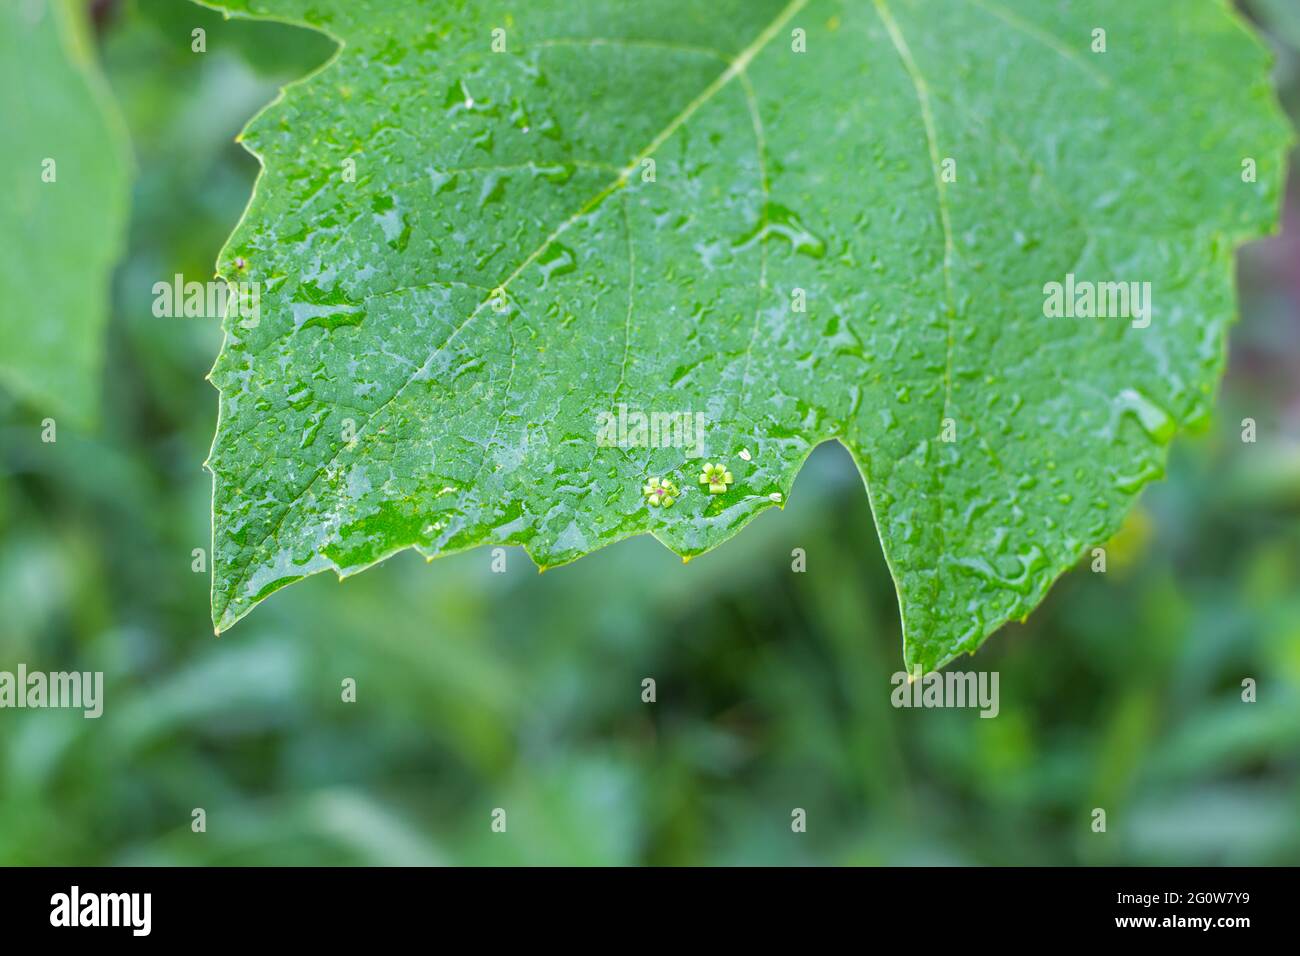 Una foglia di vite verde, bagnata dalla pioggia, con piccoli fiori caduti sulla superficie. Giardinaggio e cura di pianta. Foto Stock